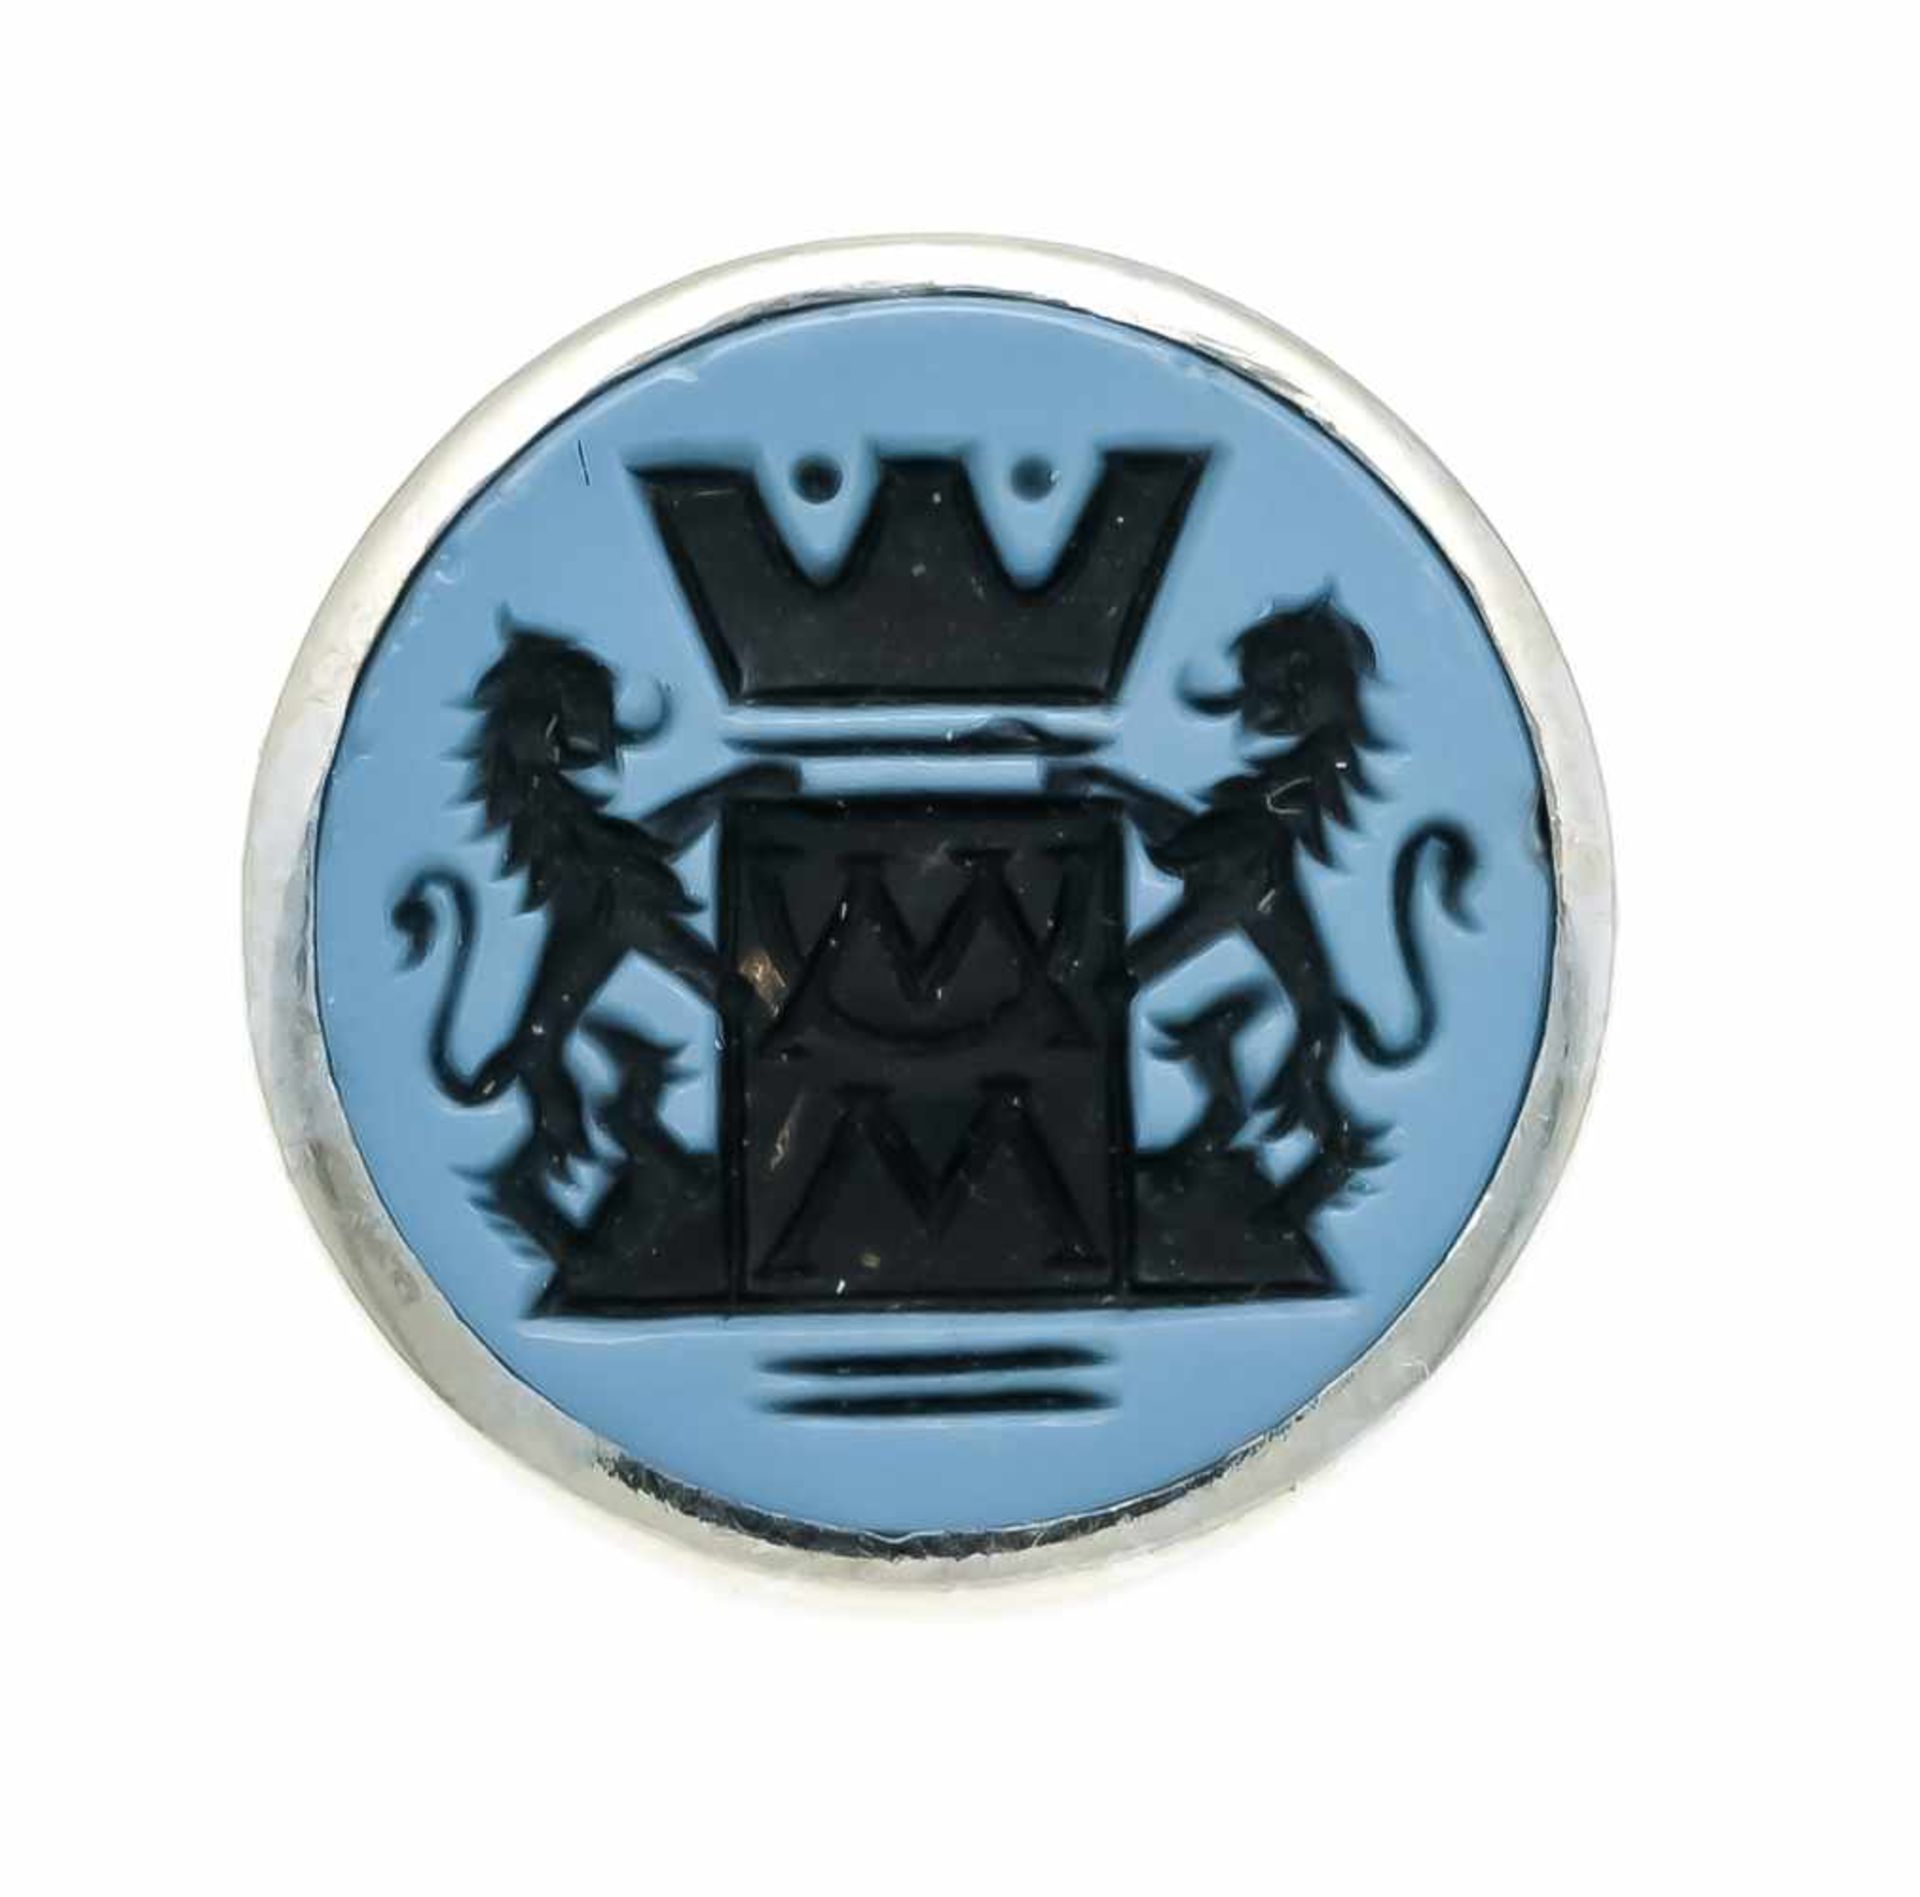 Wappen-Anstecker WG 700/000 ungest., gepr., mit einem runden, feingeschnitzten Lagenstein-Wappen